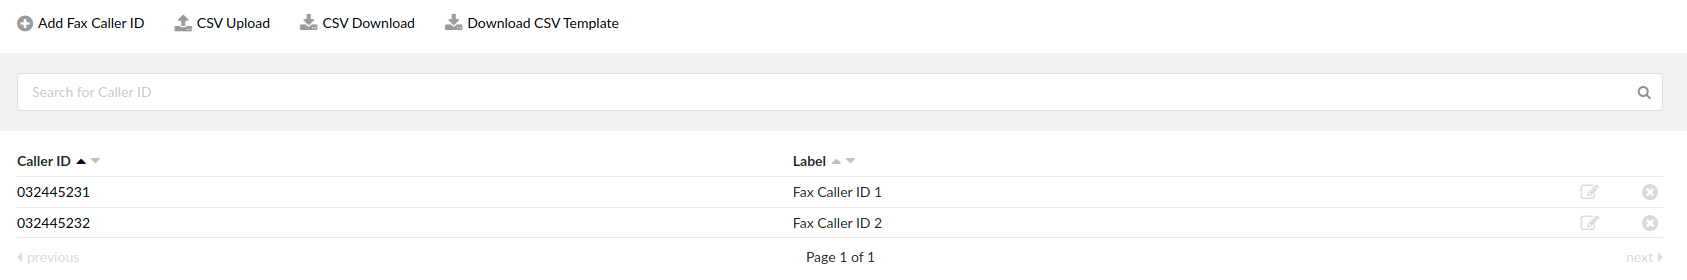 6.0-fax-callerid.png